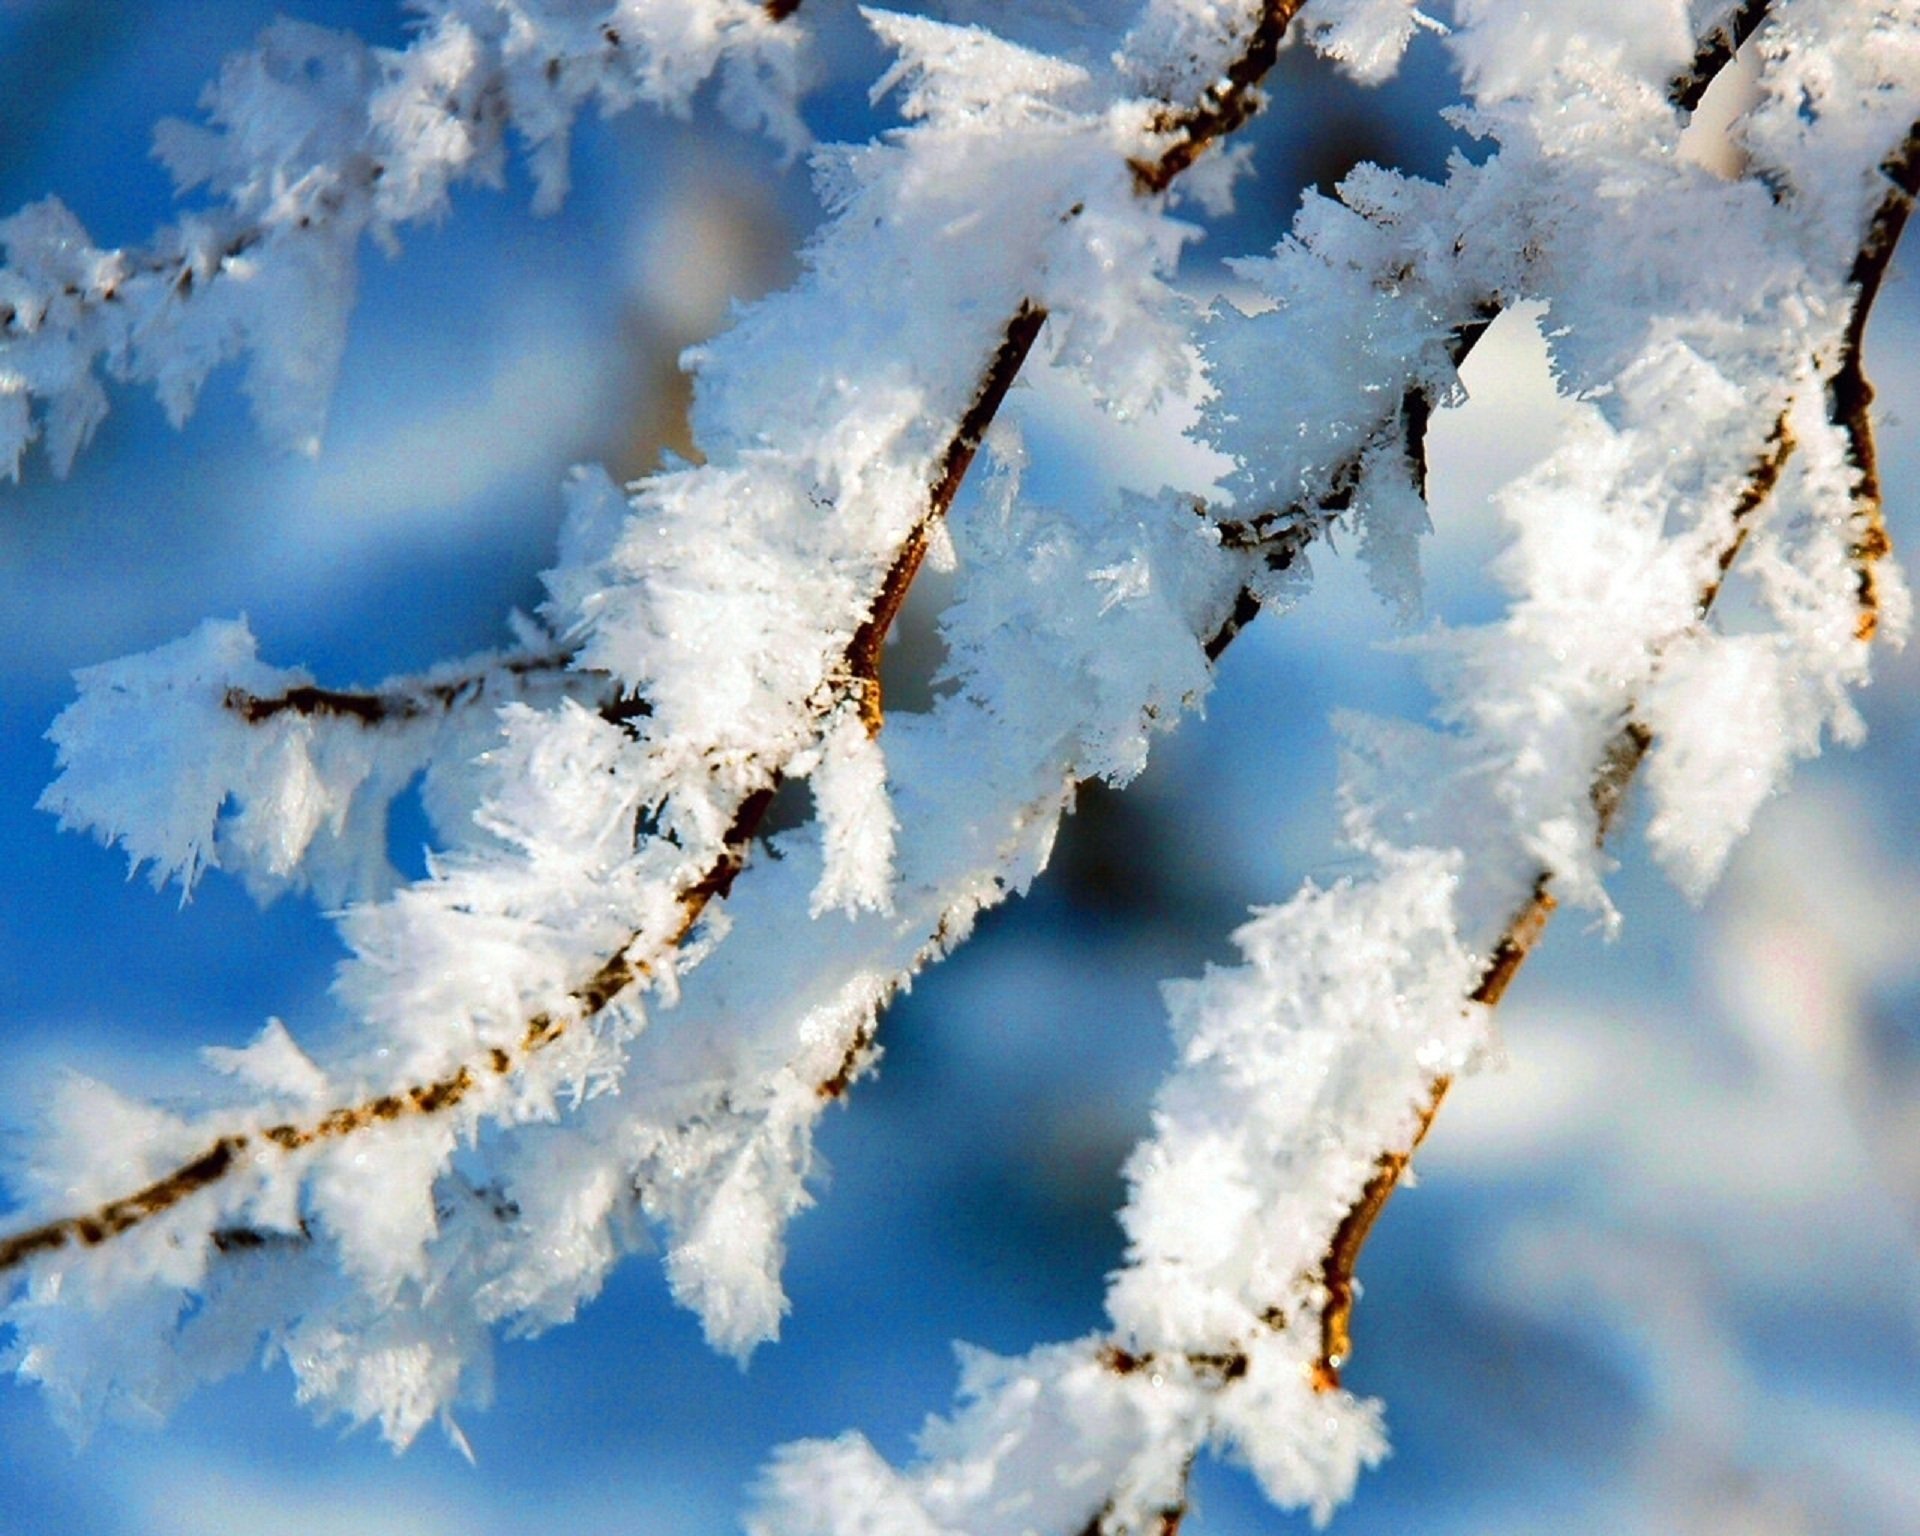 Снежки белые пушистые. Иней на ветках деревьев. Ветки в снегу. Зимняя ветка. Снег на ветках деревьев.